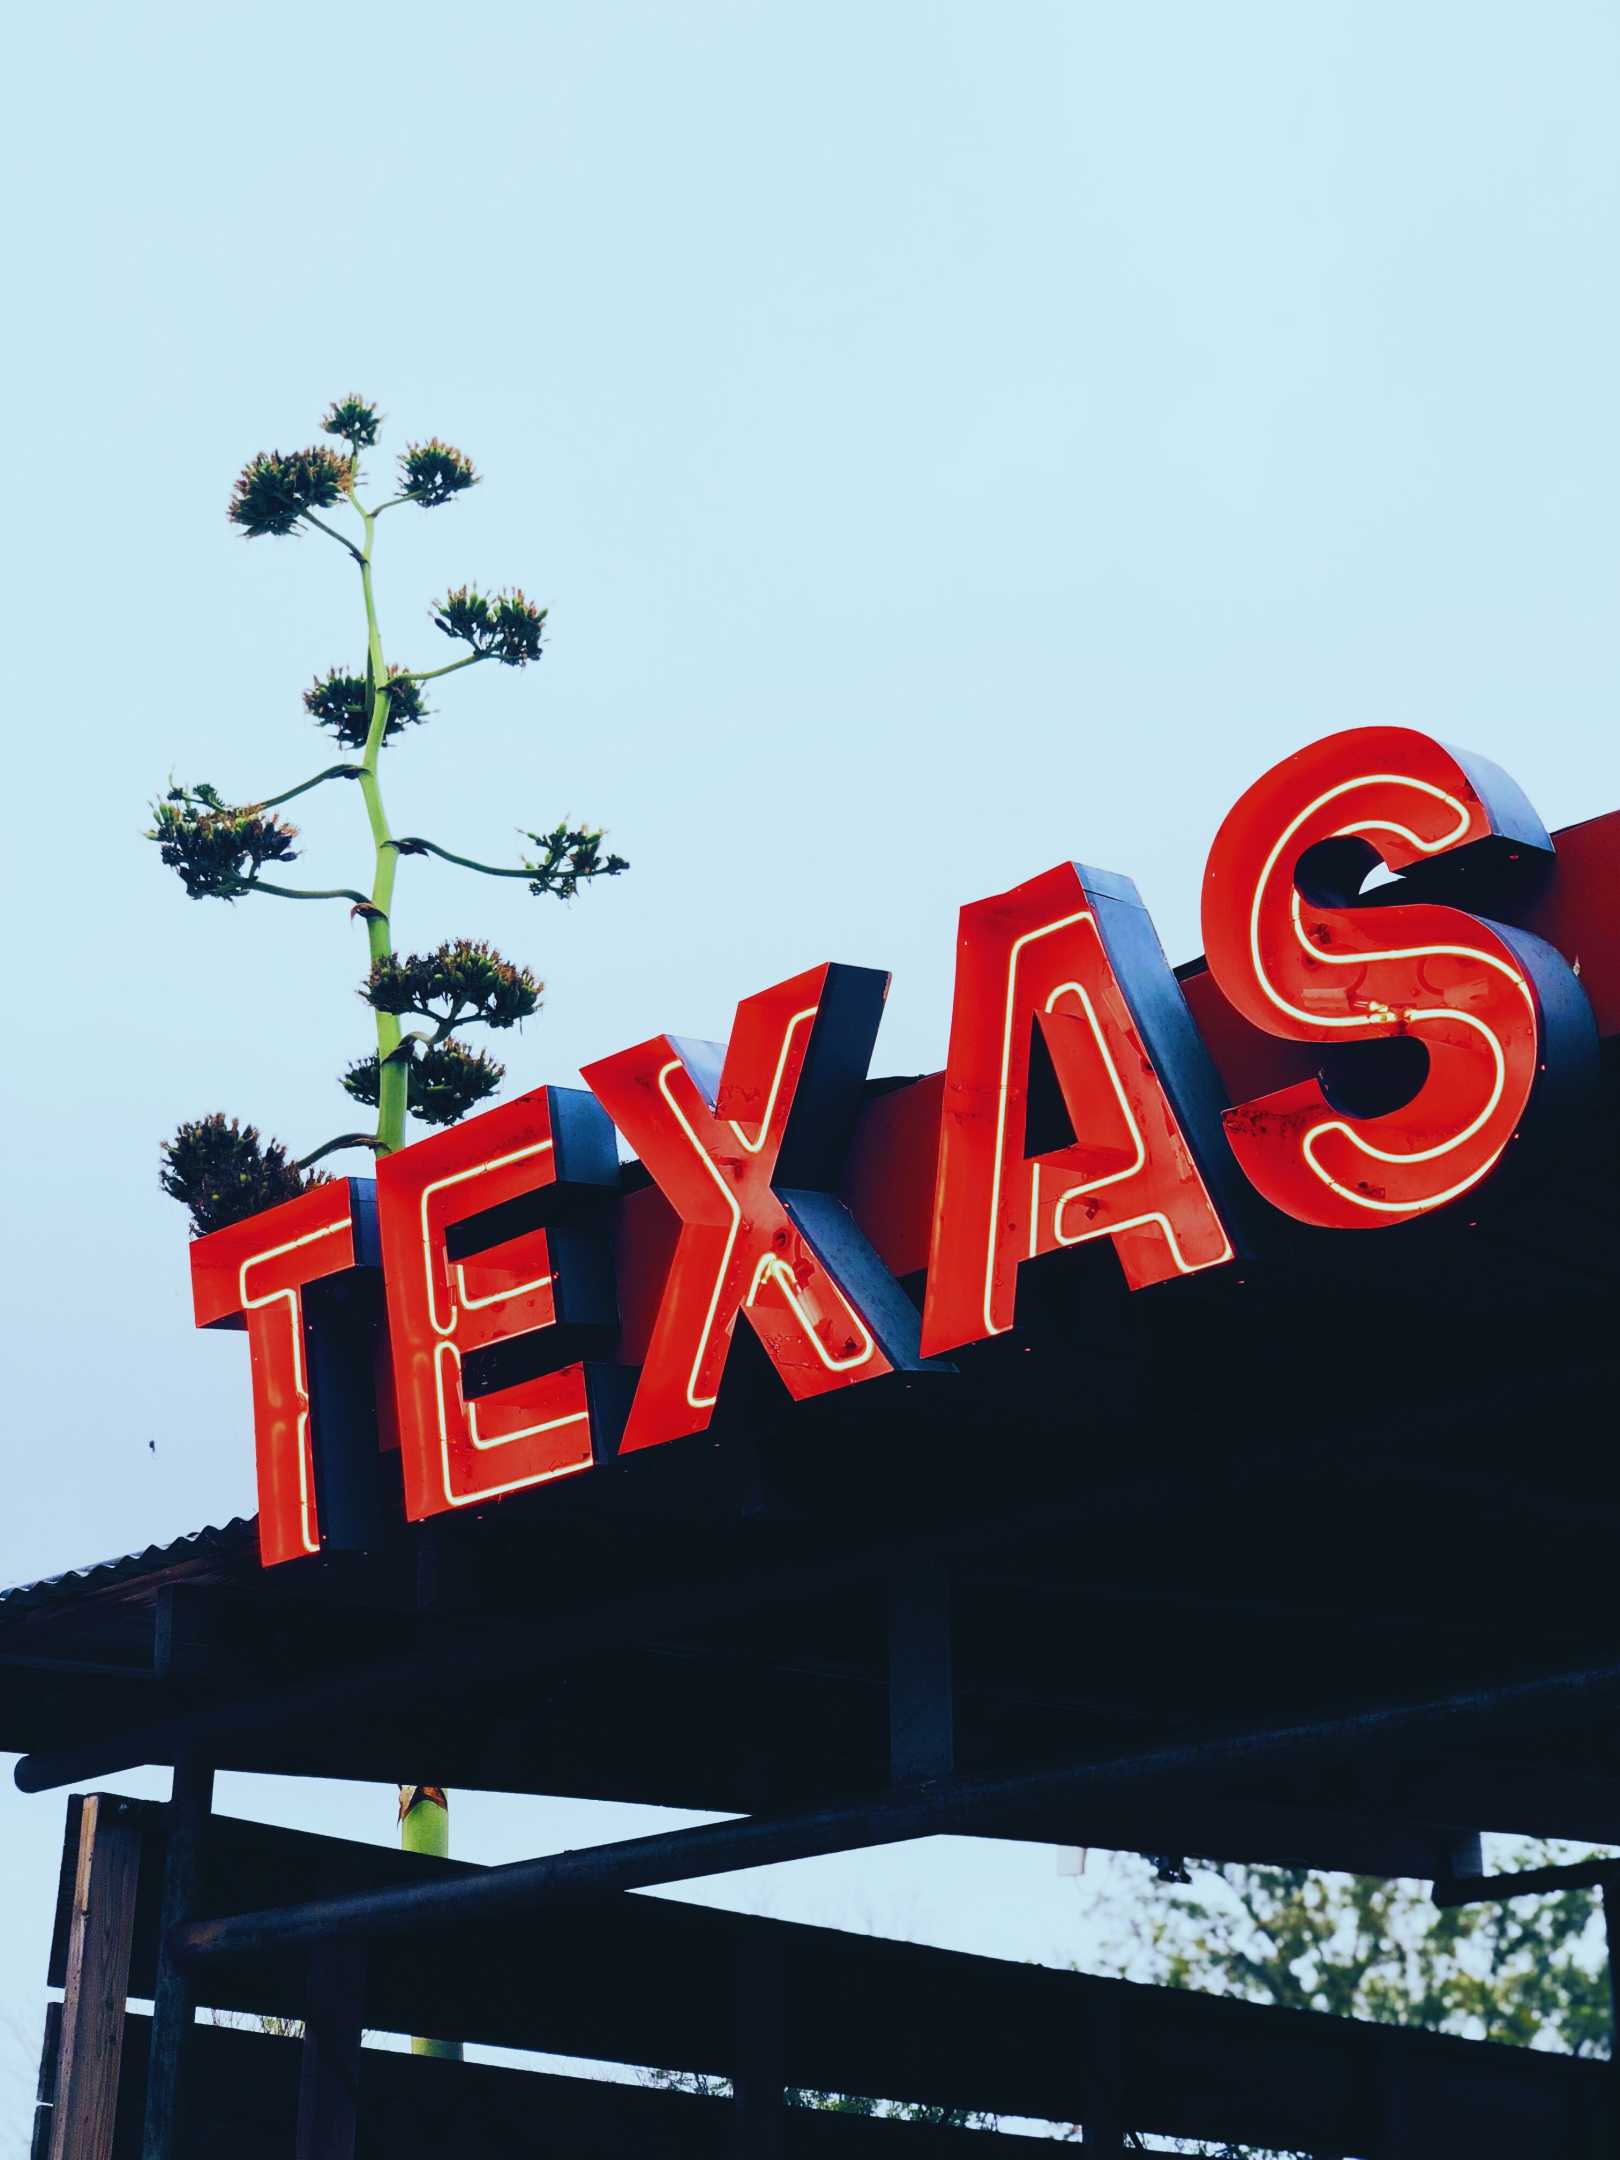 10 Best Cities to Retire in Texas in 2022